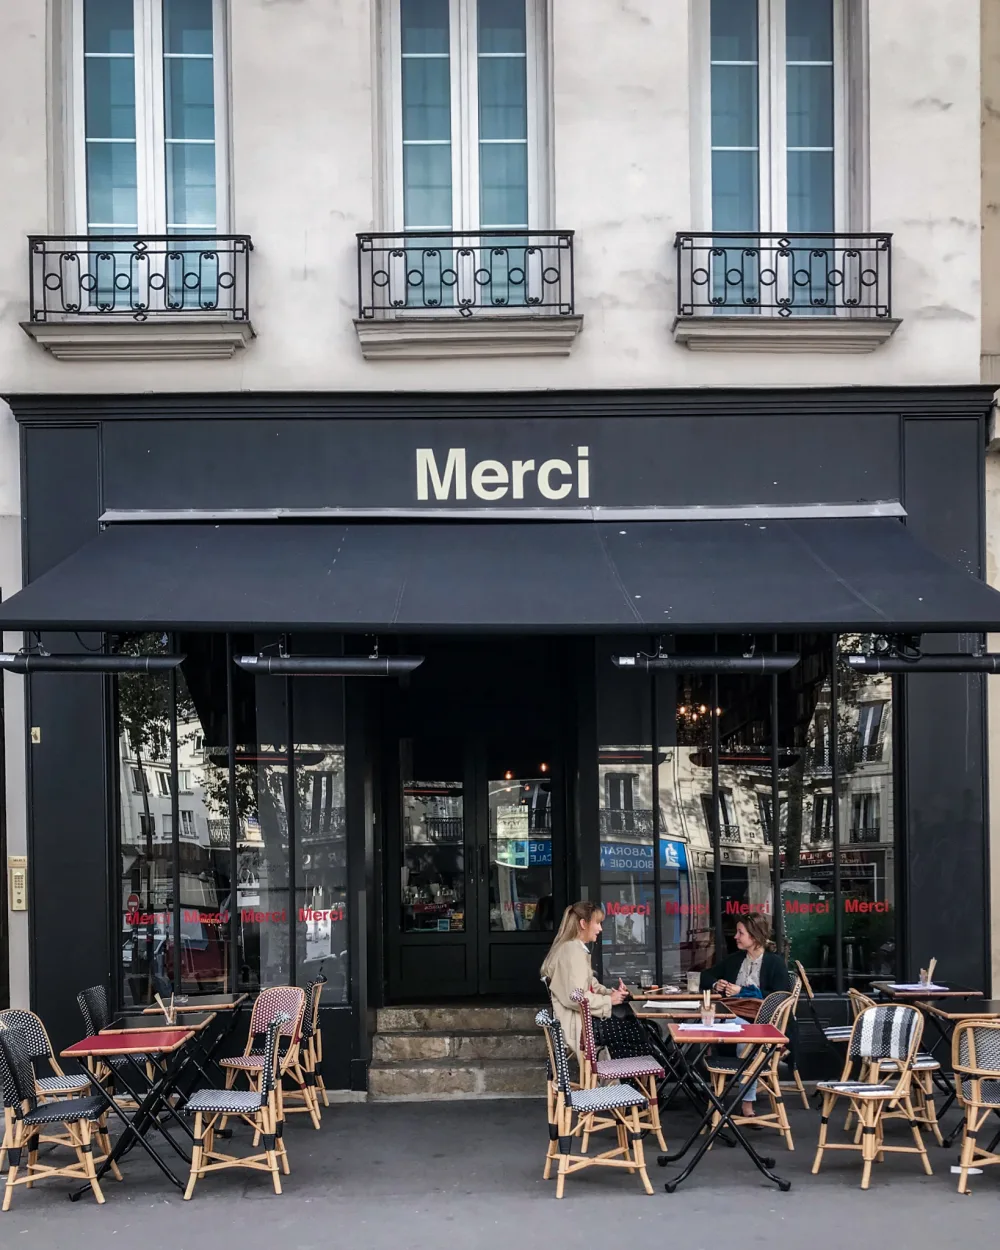 The Merci shop – Merci Paris